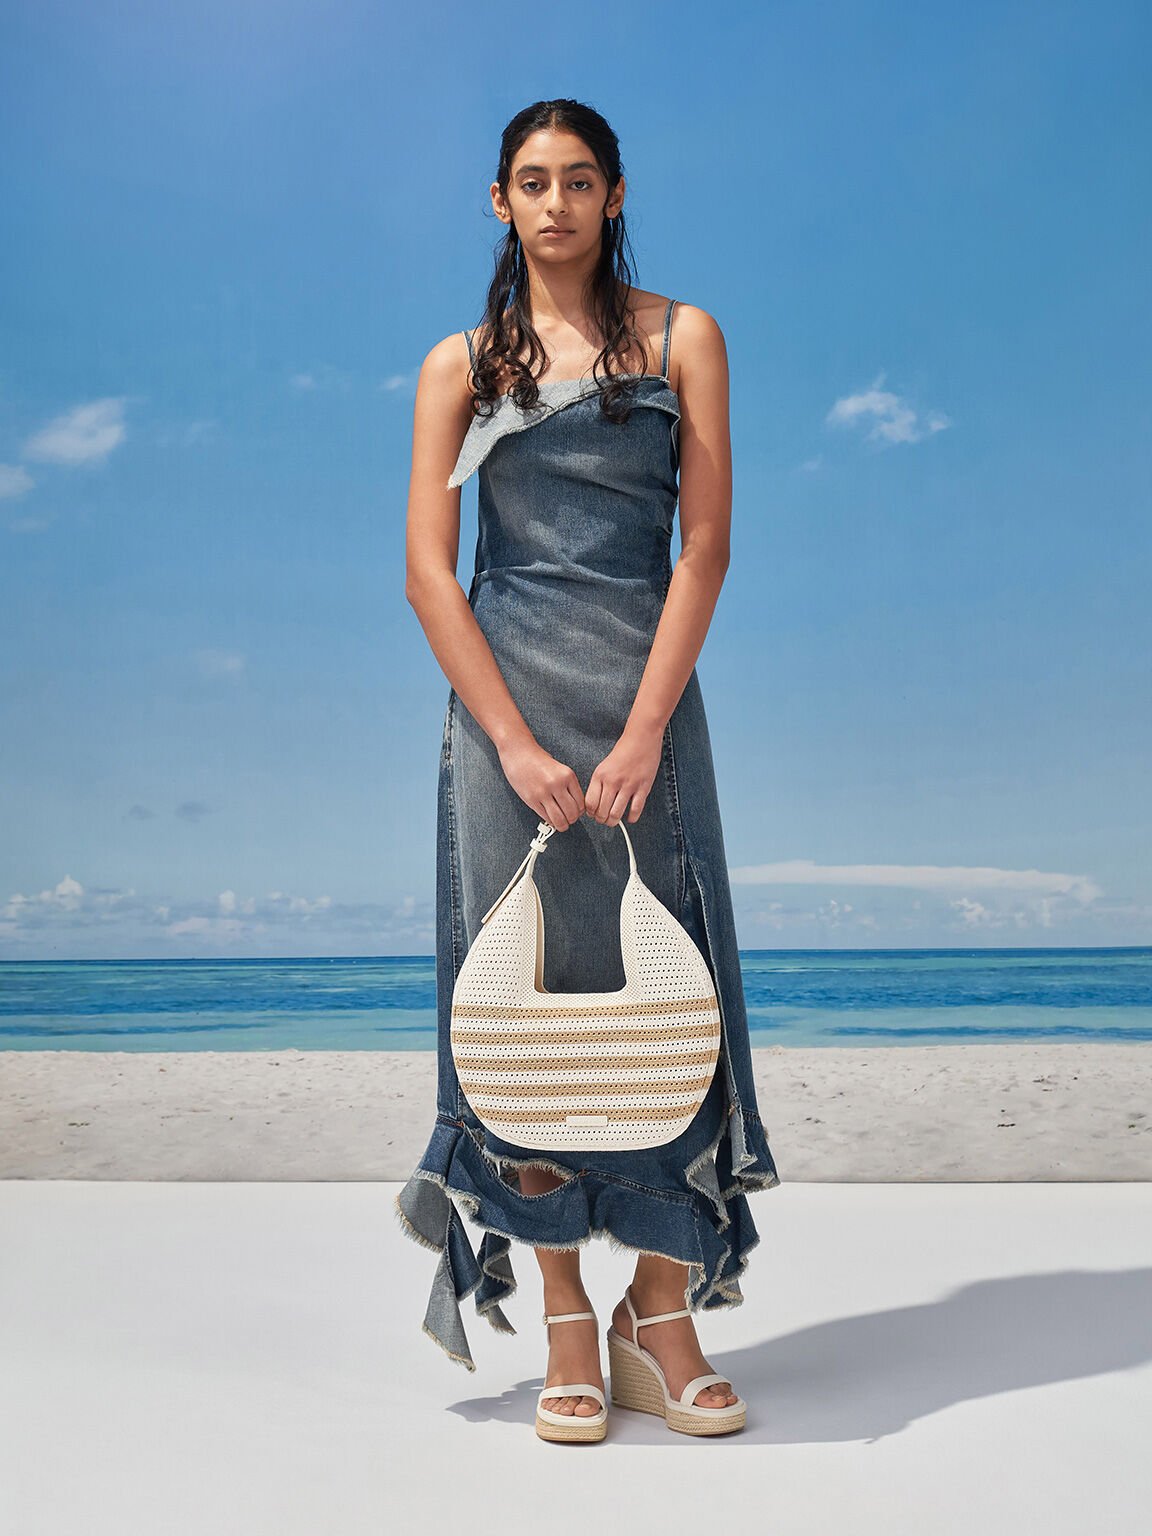 Ida Knitted Striped Hobo Bag, Sand, hi-res